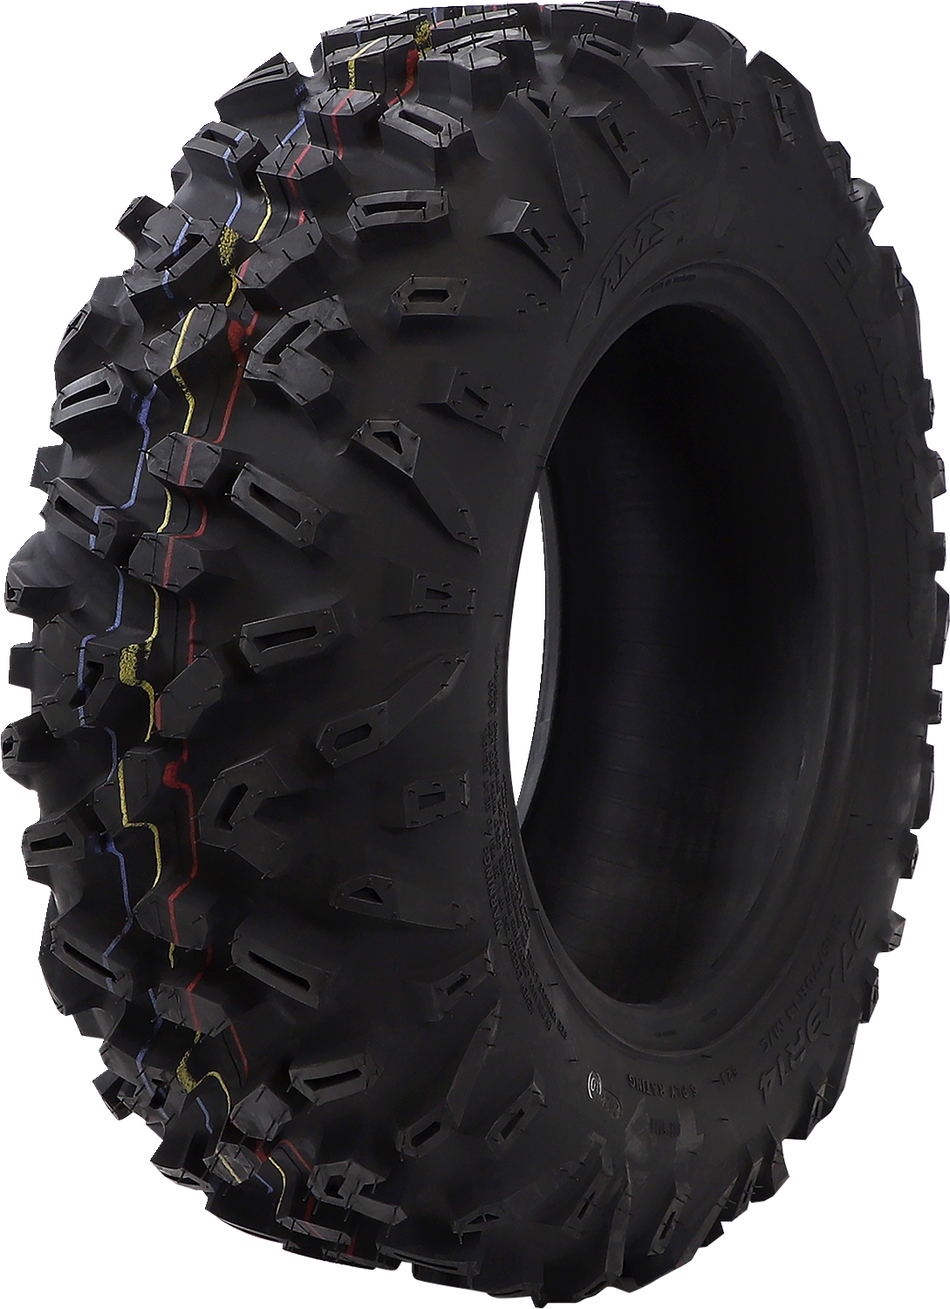 Neumático AMS - Blacktail - Delantero - 27x9R14 - 6 capas 1479-361 